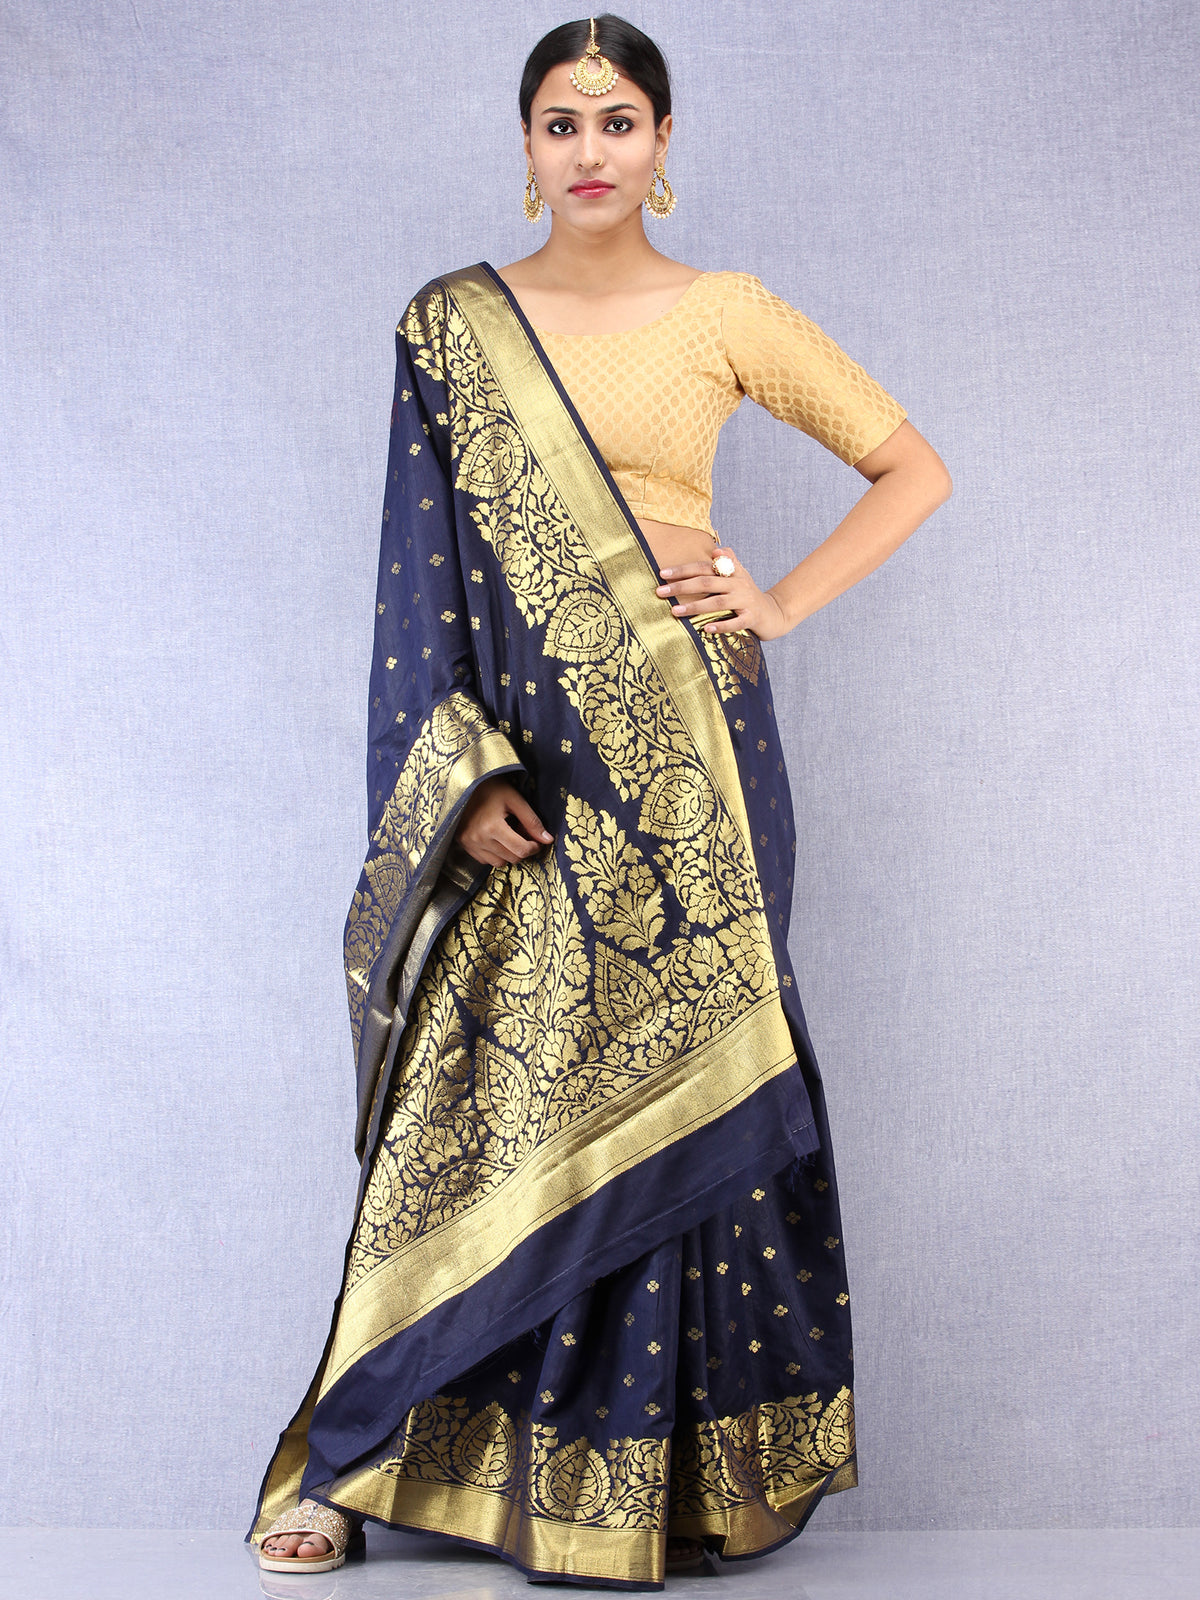 Banarasee Semi Silk Saree With Zari Border - Navy Blue Gold  - S031704384